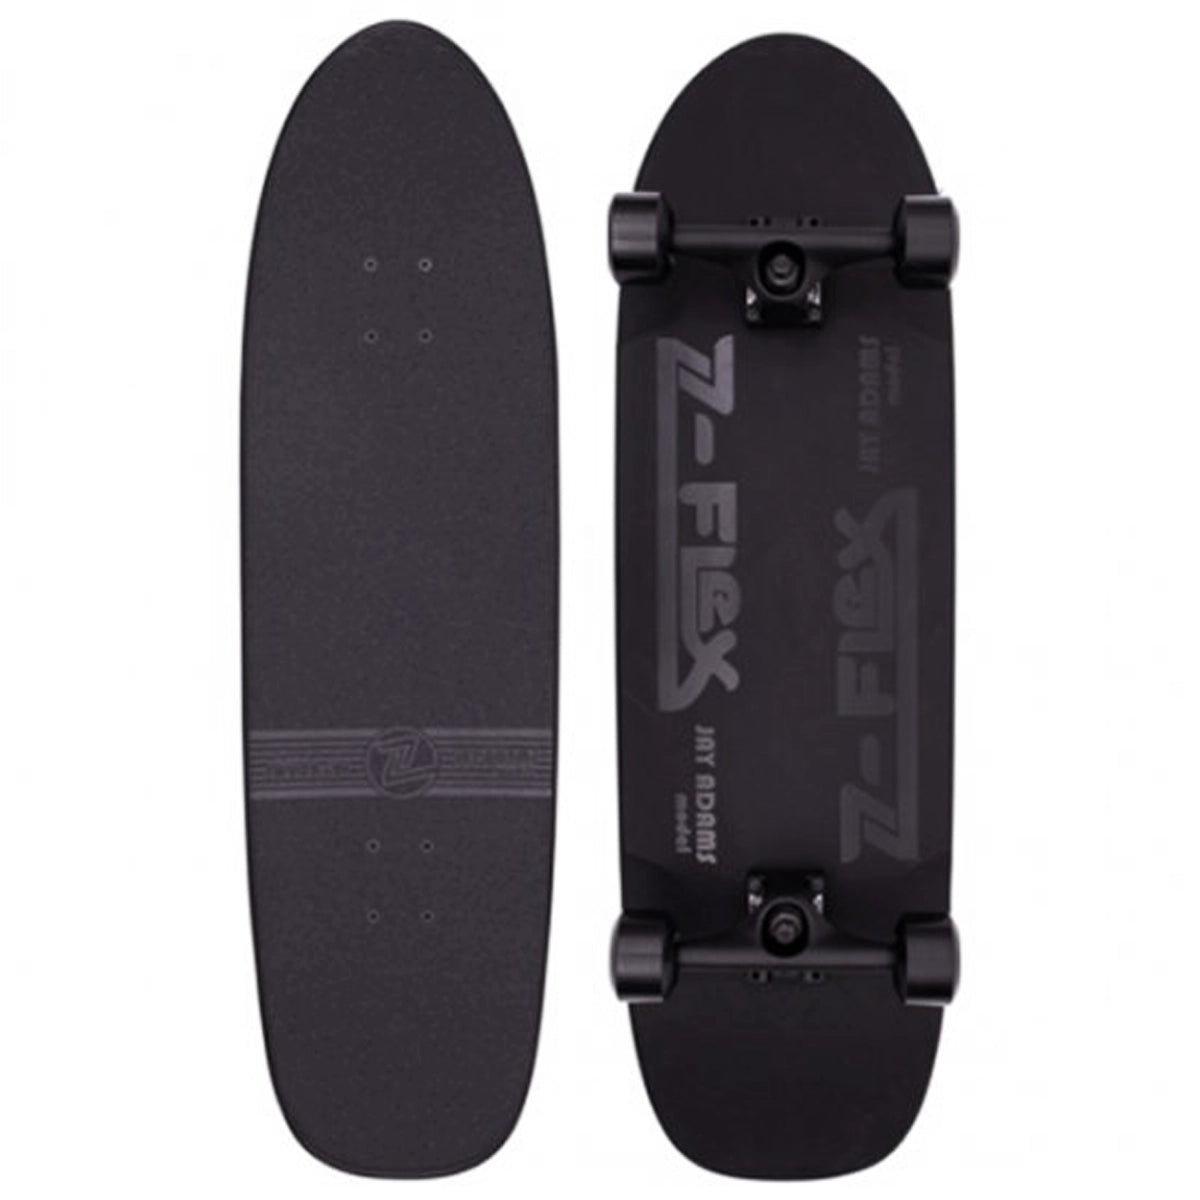 Z-FLEX スケートボード 29インチ SHADOW LURKER コンプリート ブラック【公式通販】